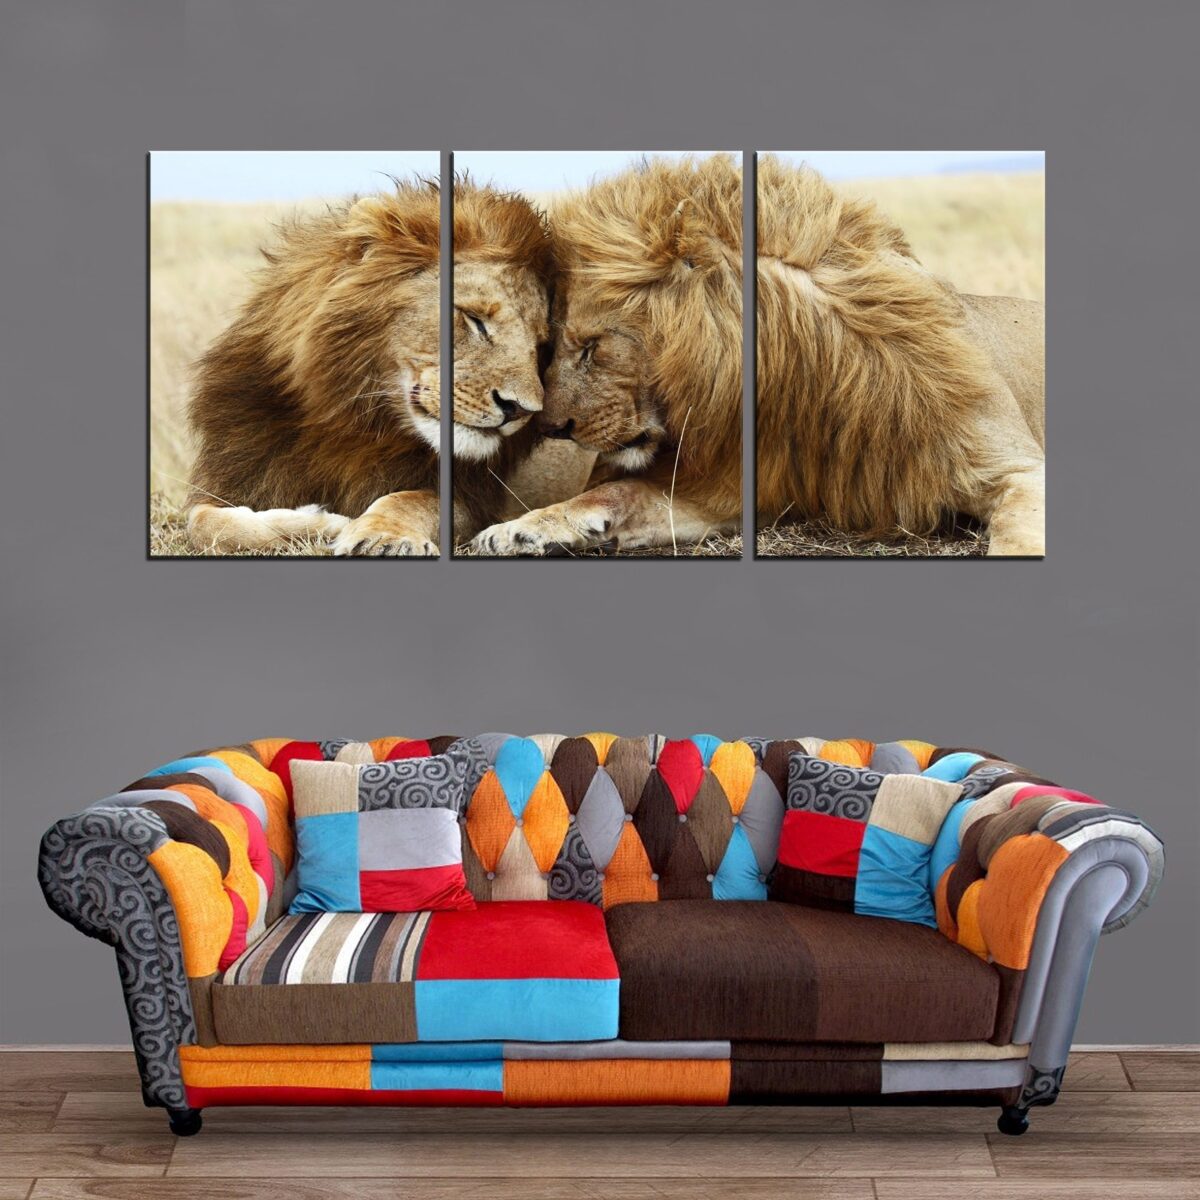 Décoration Murale Couple Lions